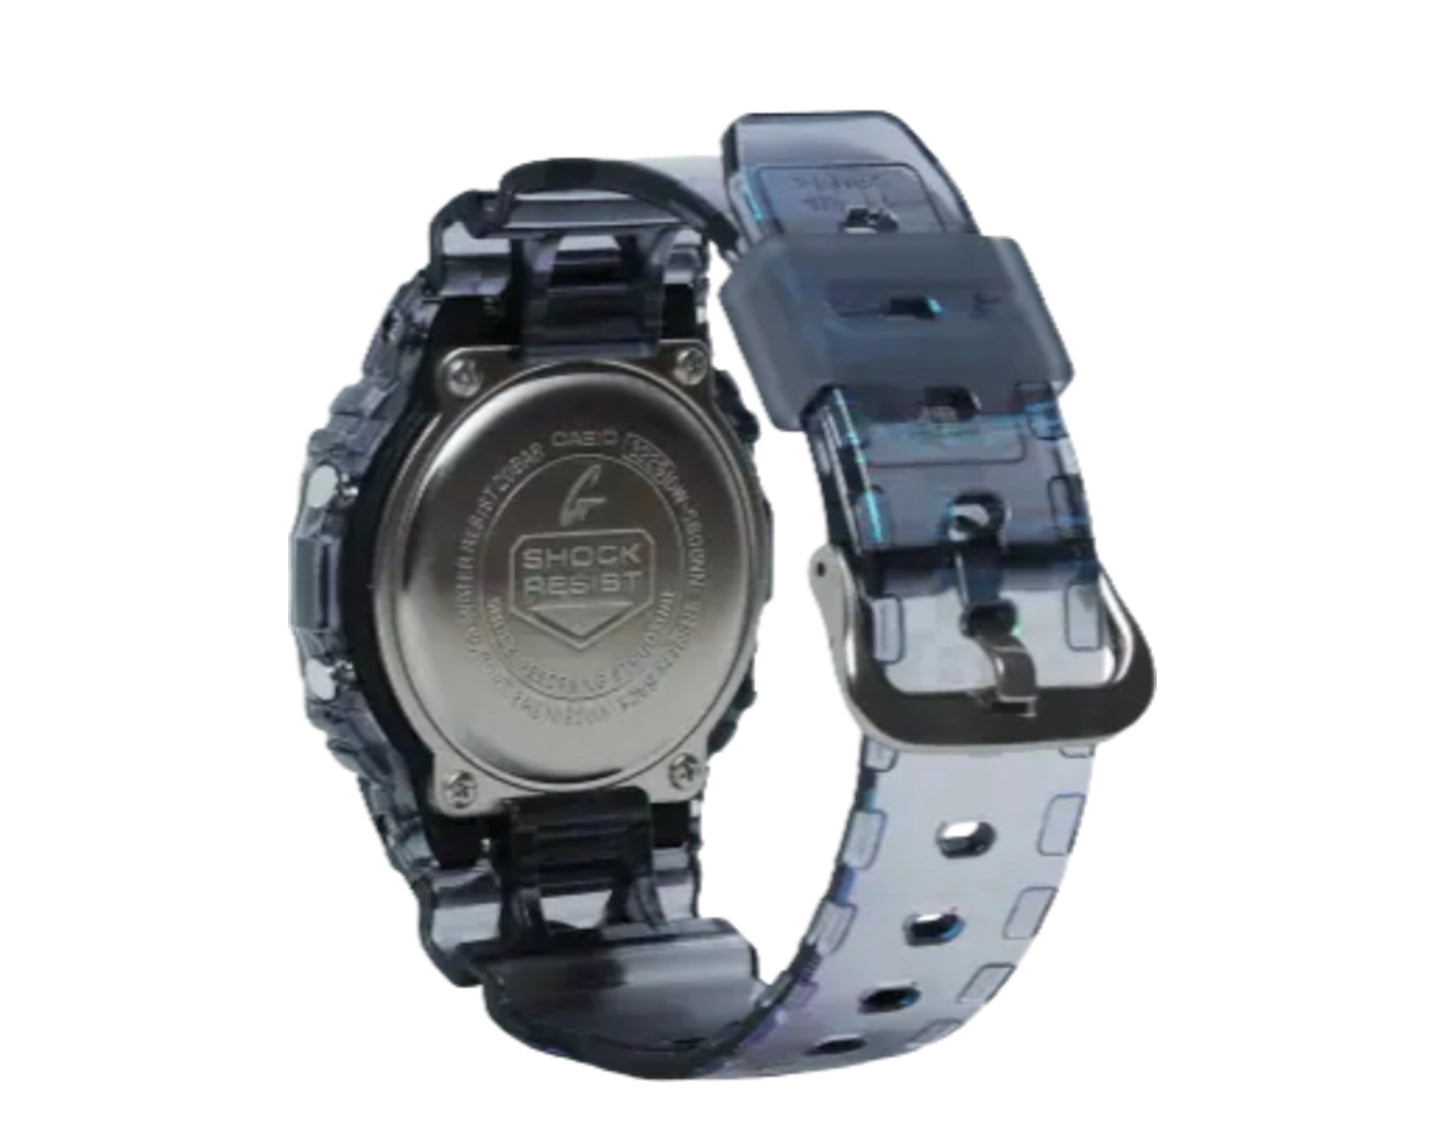 Casio G-Shock DW5600NN Digital Glitch Pack Digital Resin Watch